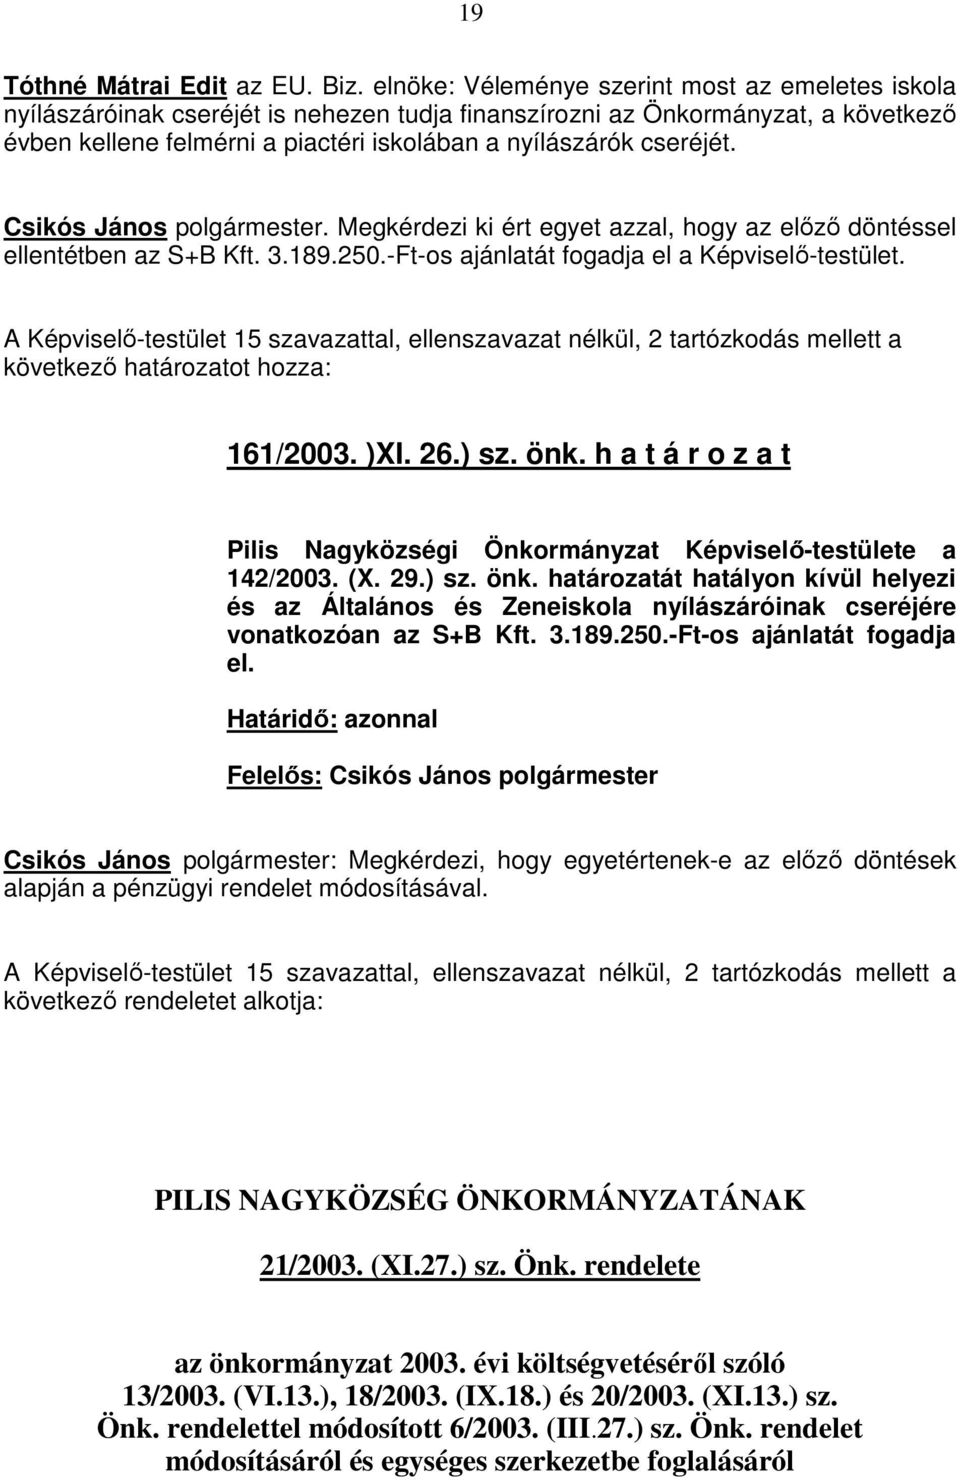 cseréjét. Csikós János polgármester. Megkérdezi ki ért egyet azzal, hogy az elızı döntéssel ellentétben az S+B Kft. 3.189.250.-Ft-os ajánlatát fogadja el a Képviselı-testület.